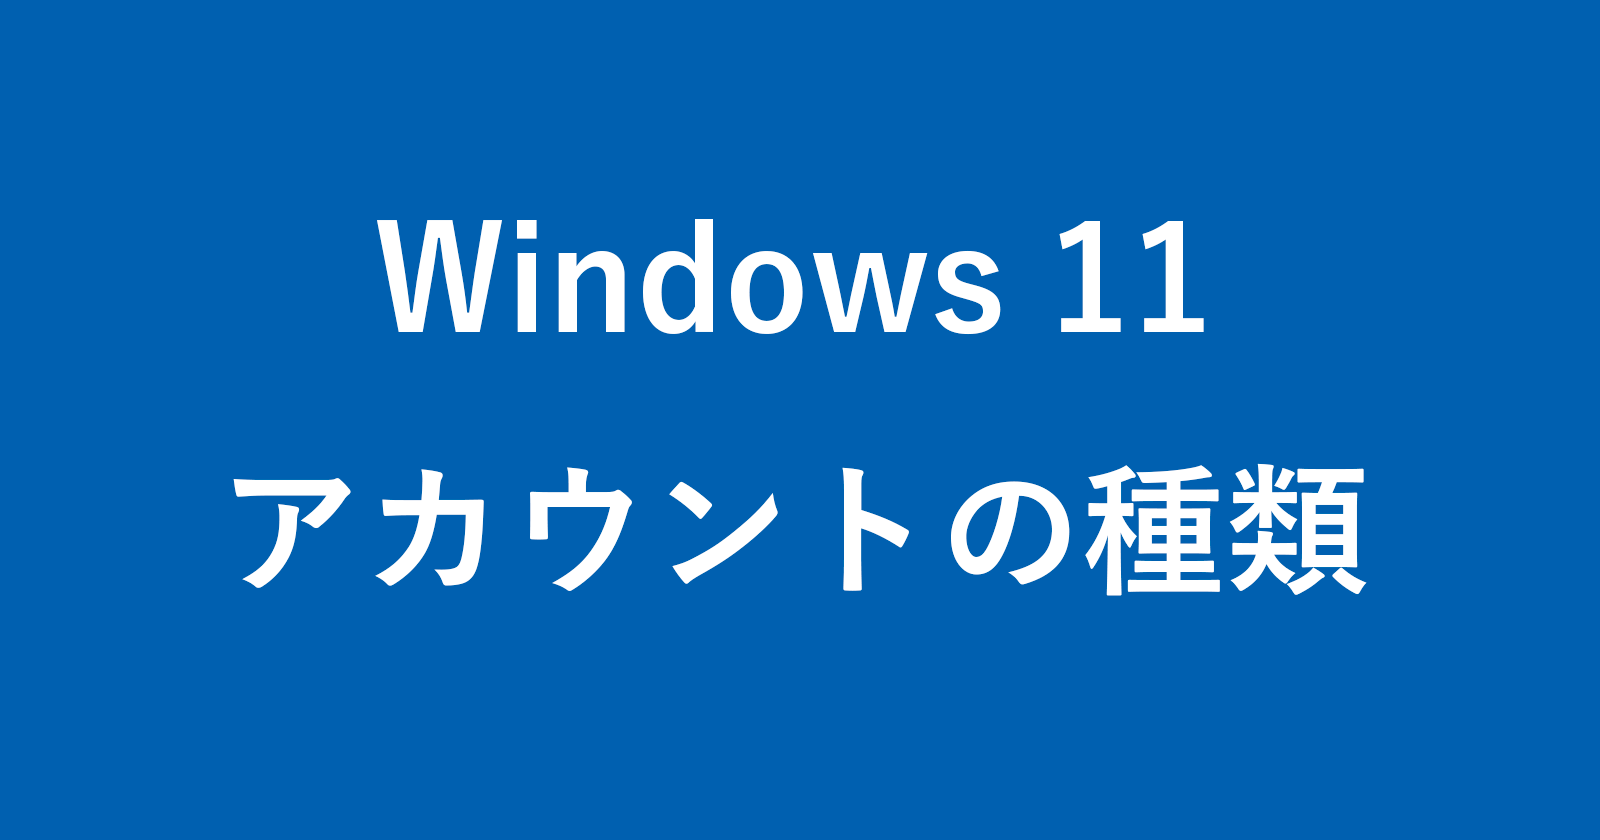 windows 11 account type